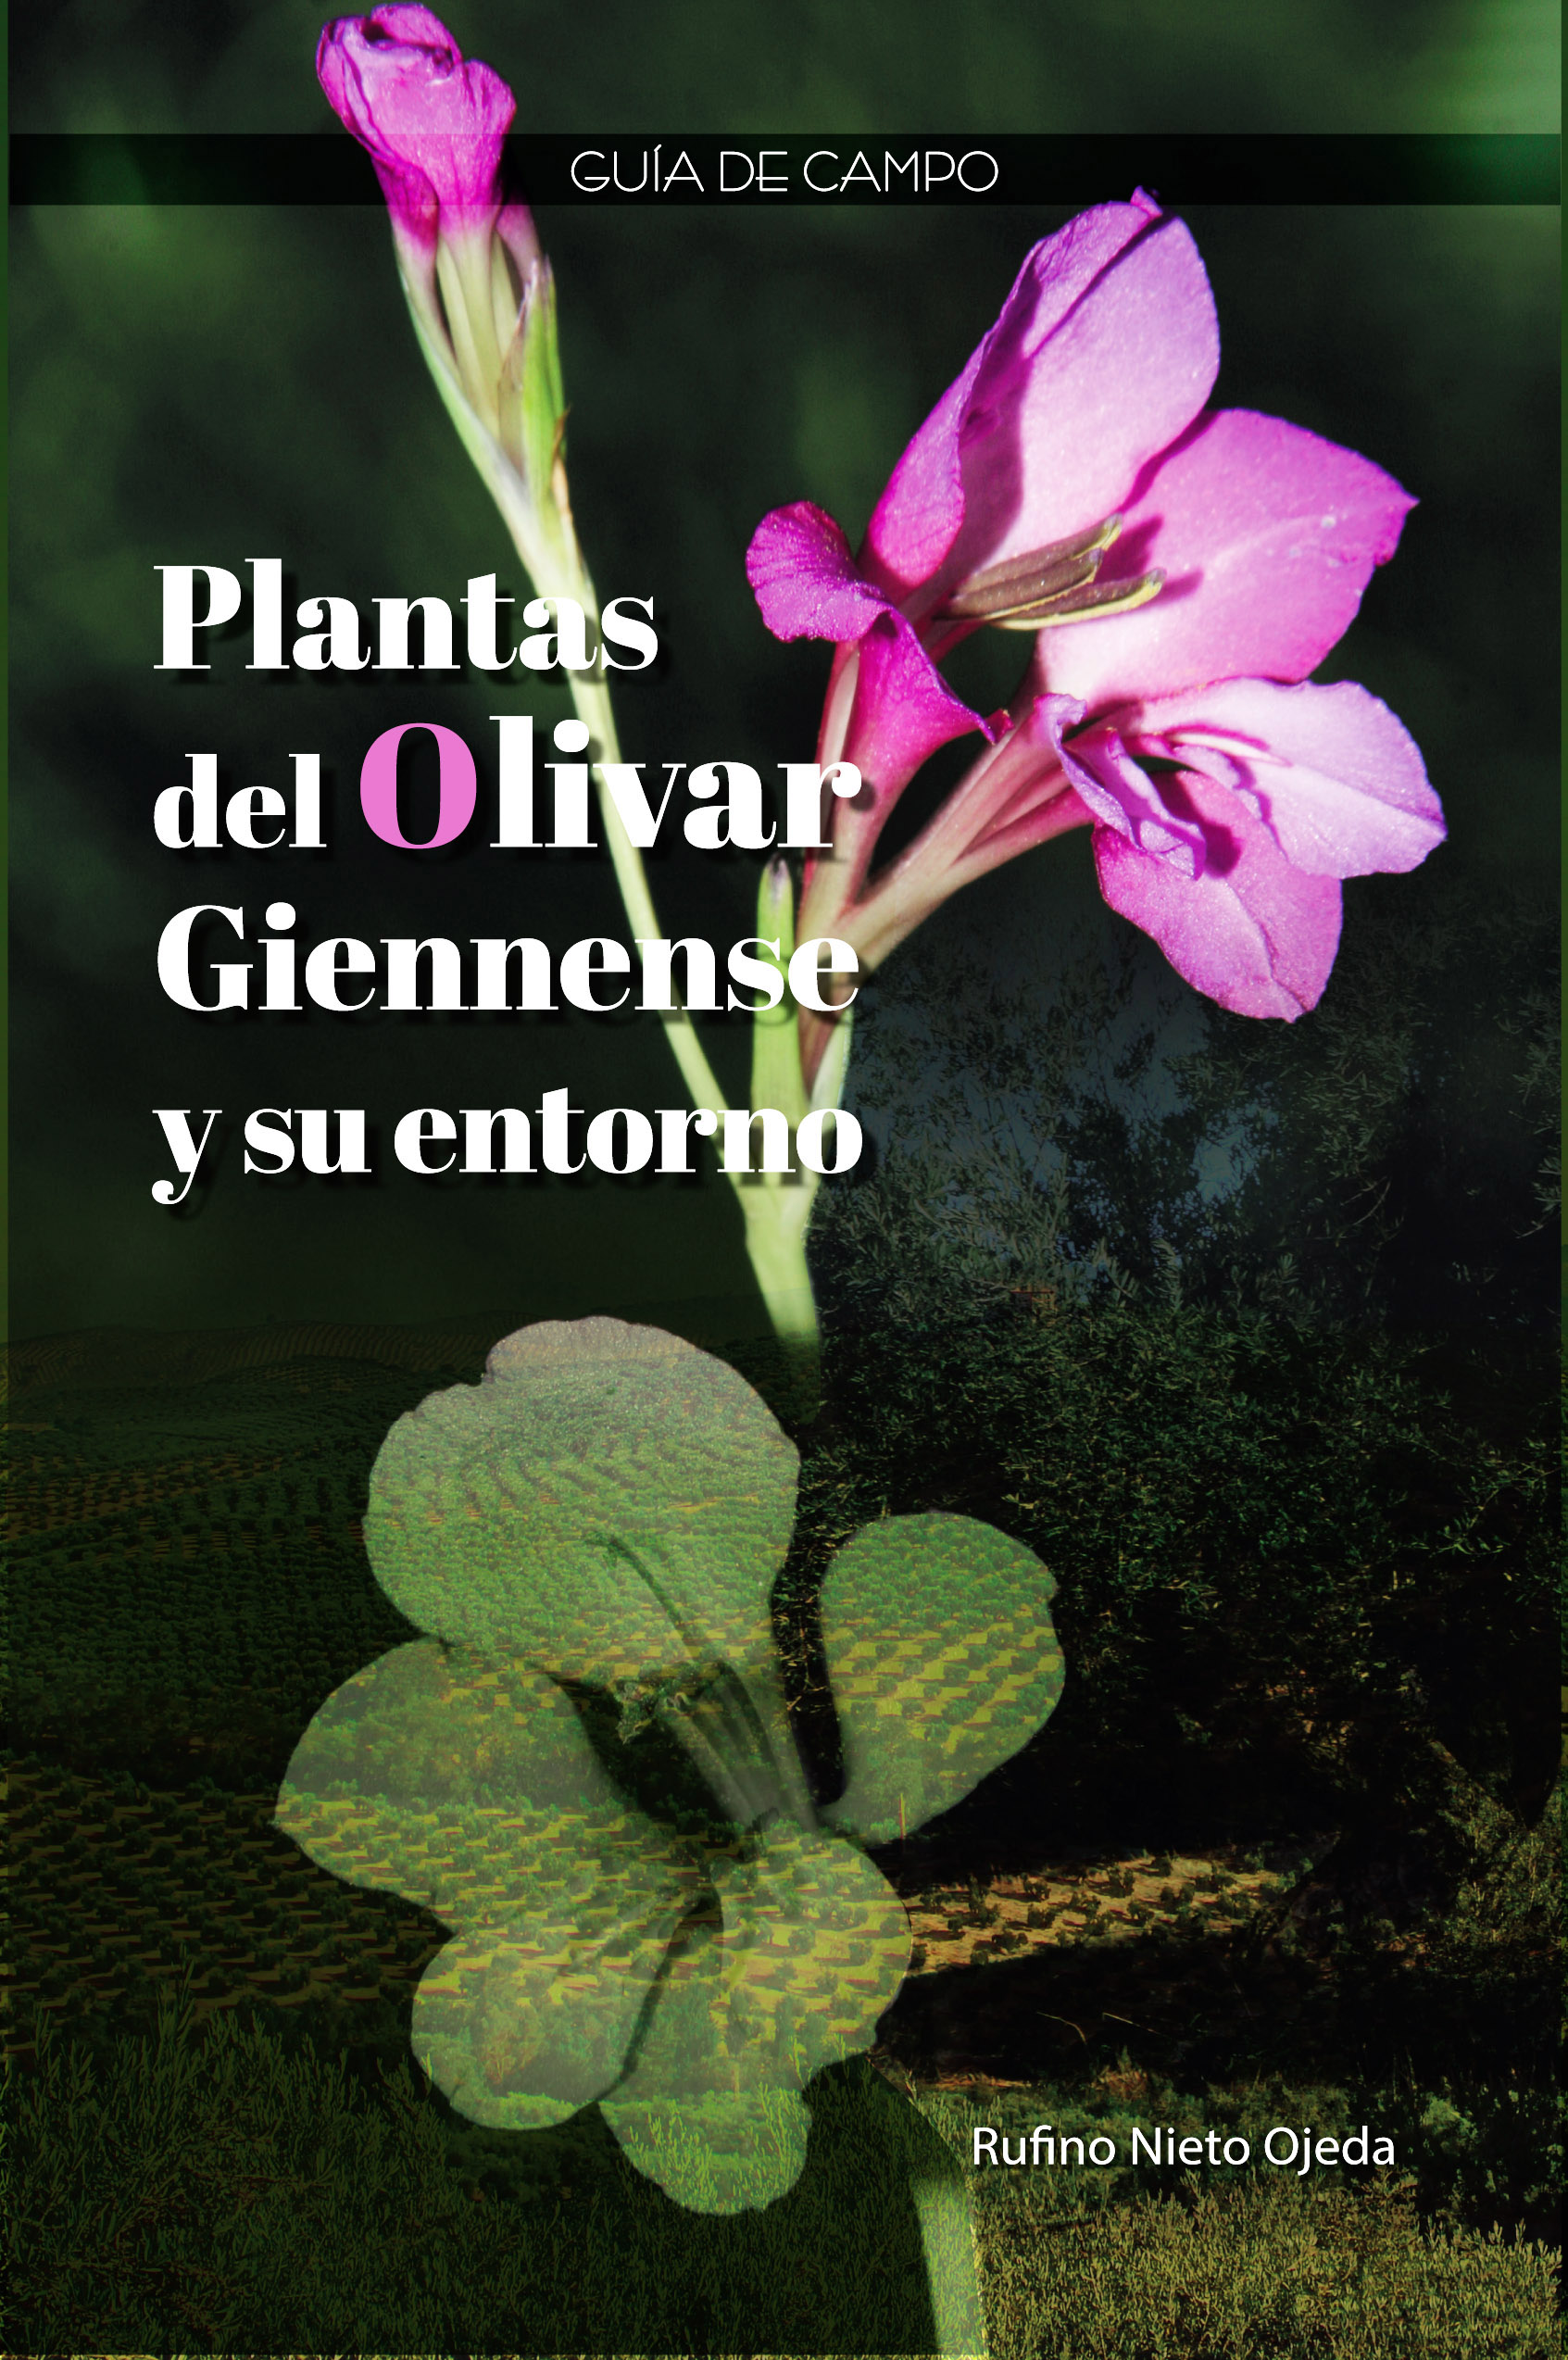 Plantas del olivar giennense y su entorno